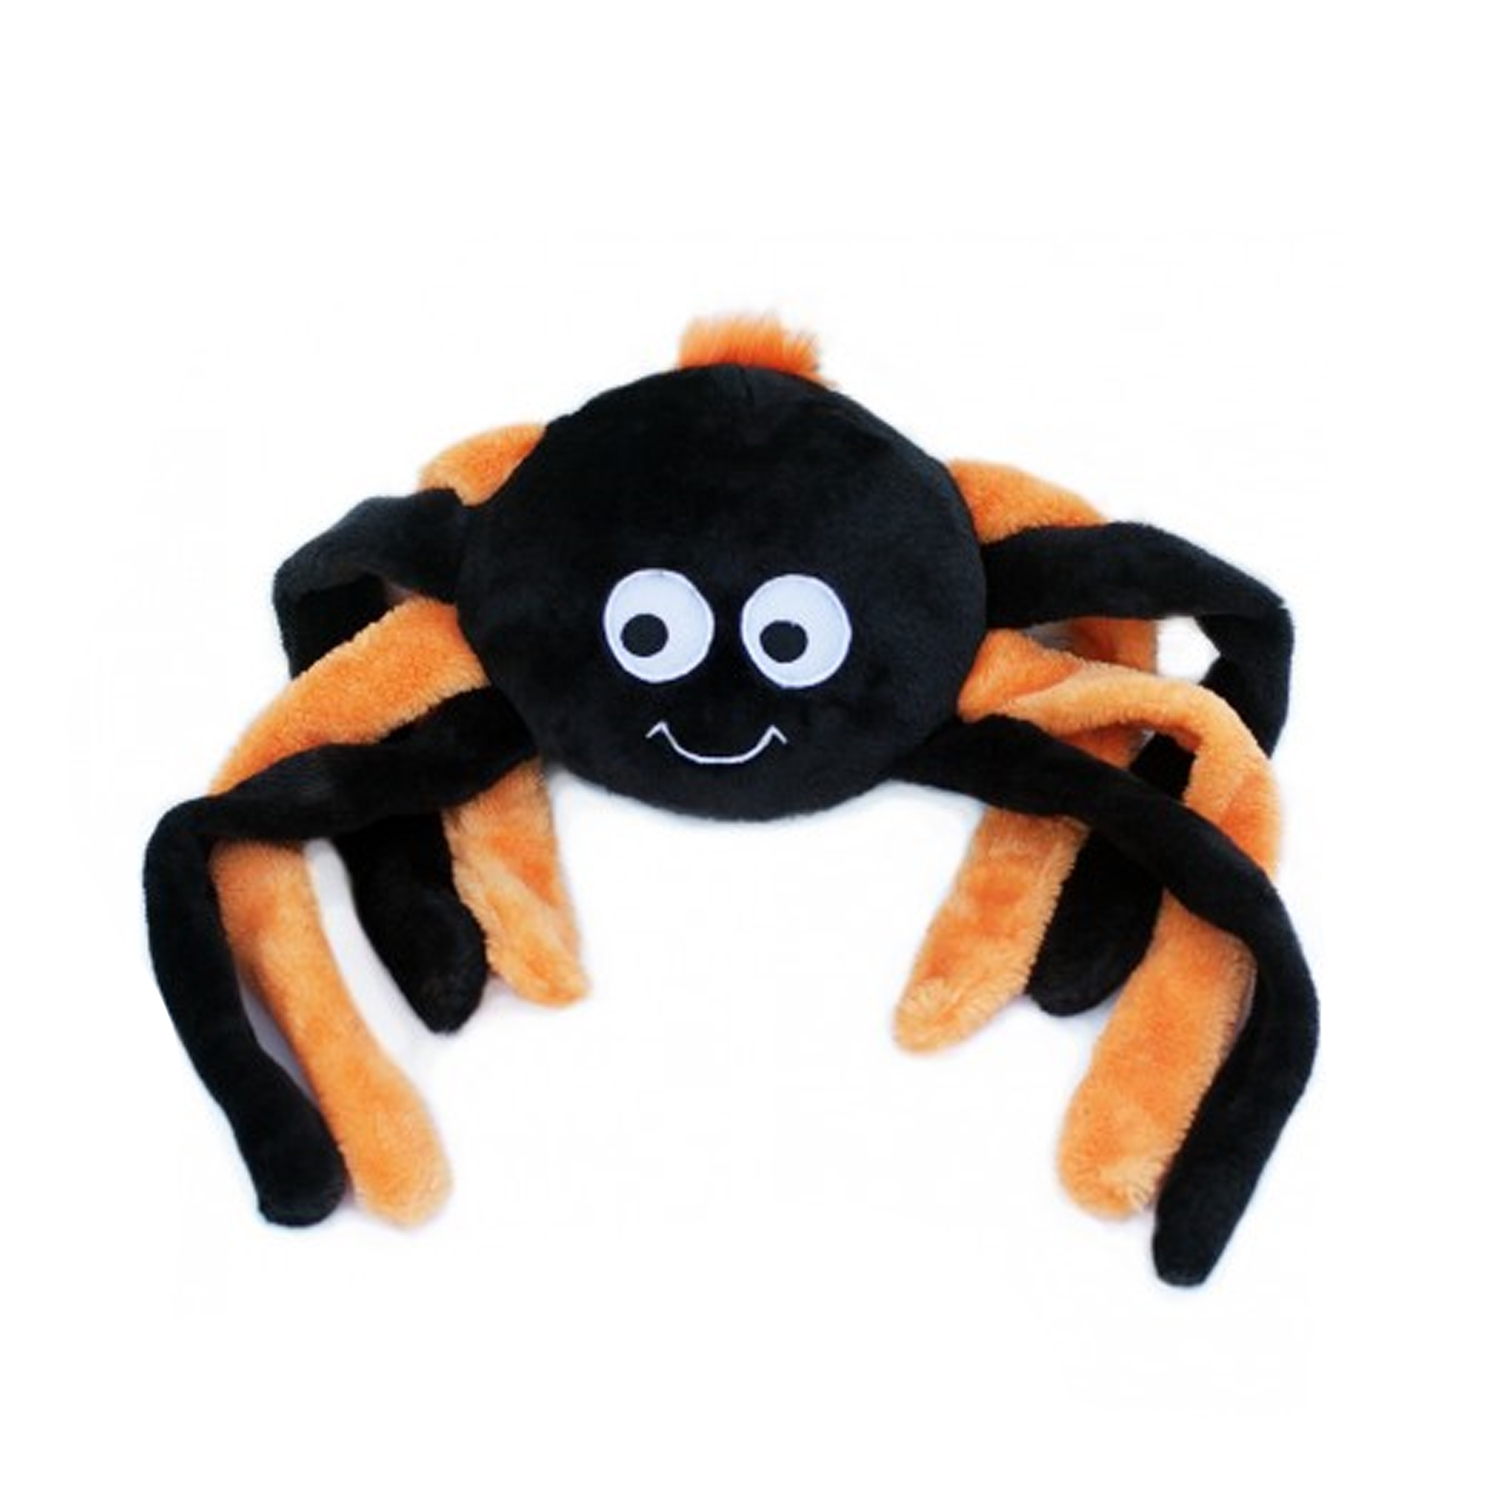 ZippyPaws Halloween Grunterz Dog Toy - Orange Spider